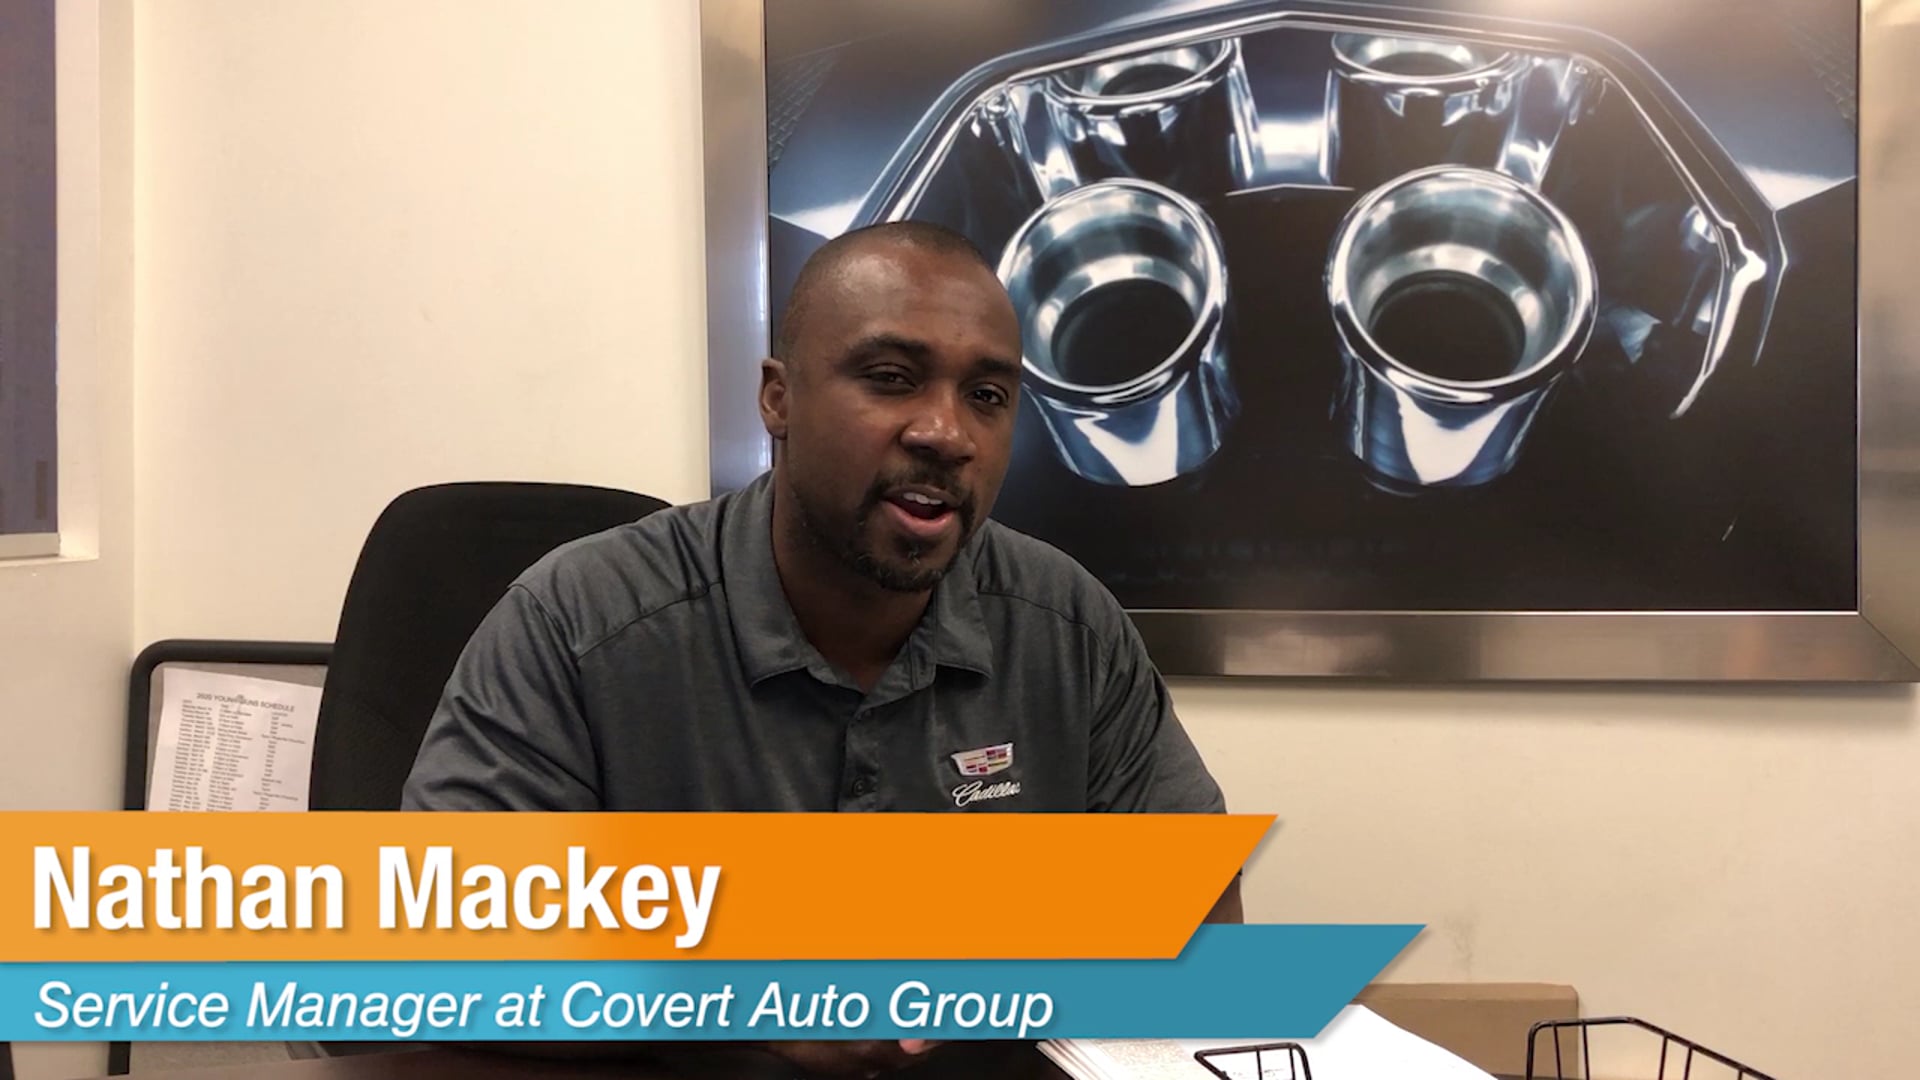 Success at Covert Auto Group - Nathan Mackey